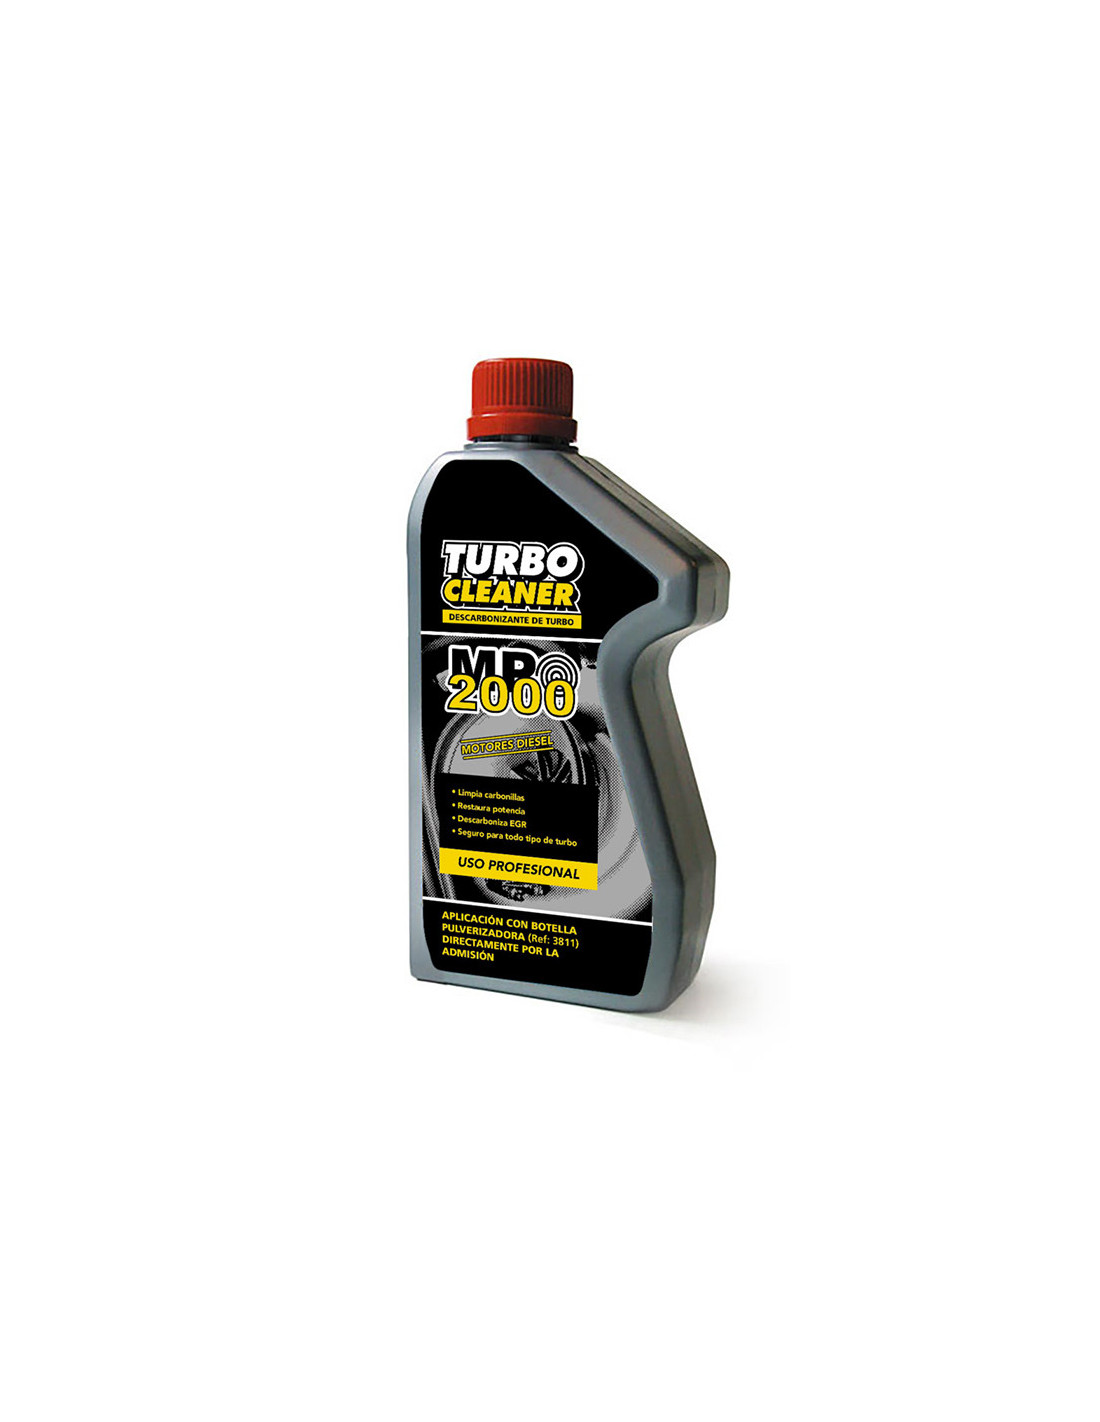 Comprar MP2000 Turbo Cleaner Descarbonizador Turbos Compralubricantes